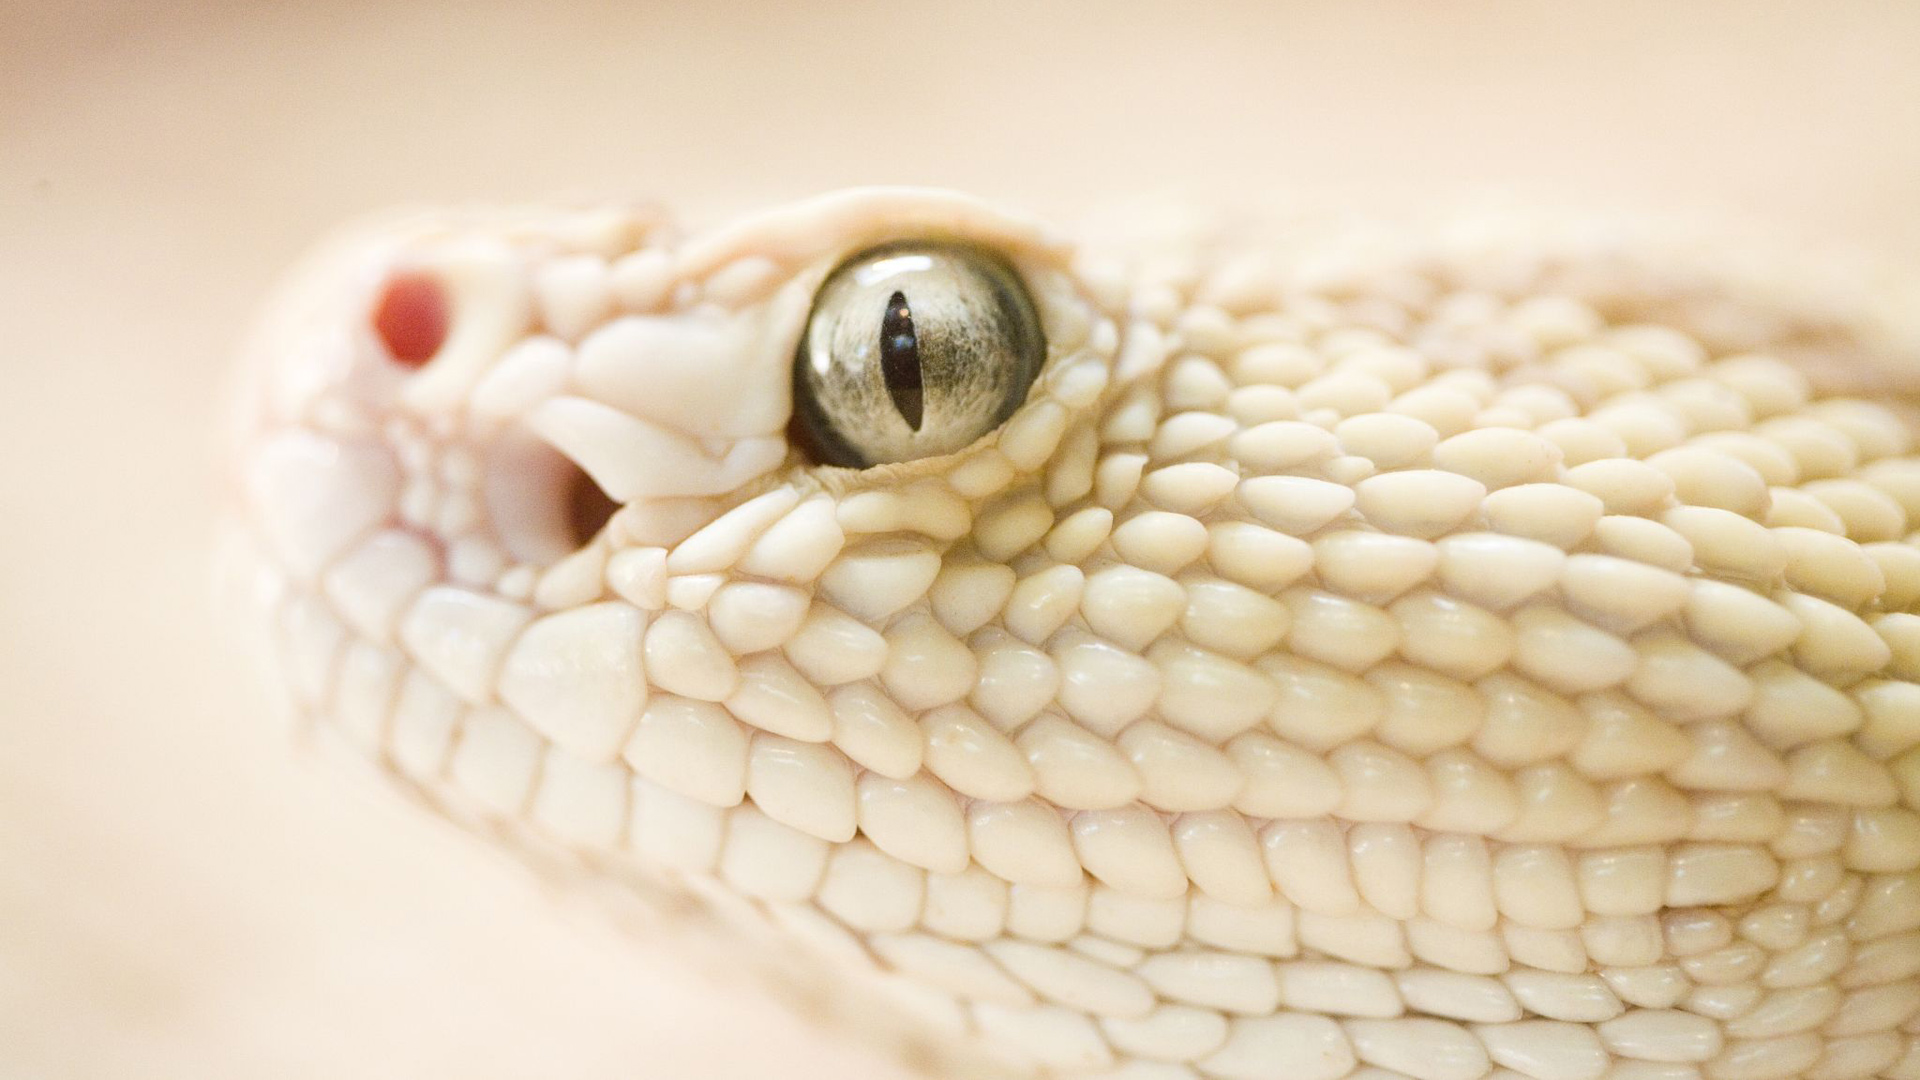 Free download wallpaper Animal, Snake, Reptiles, Eye on your PC desktop